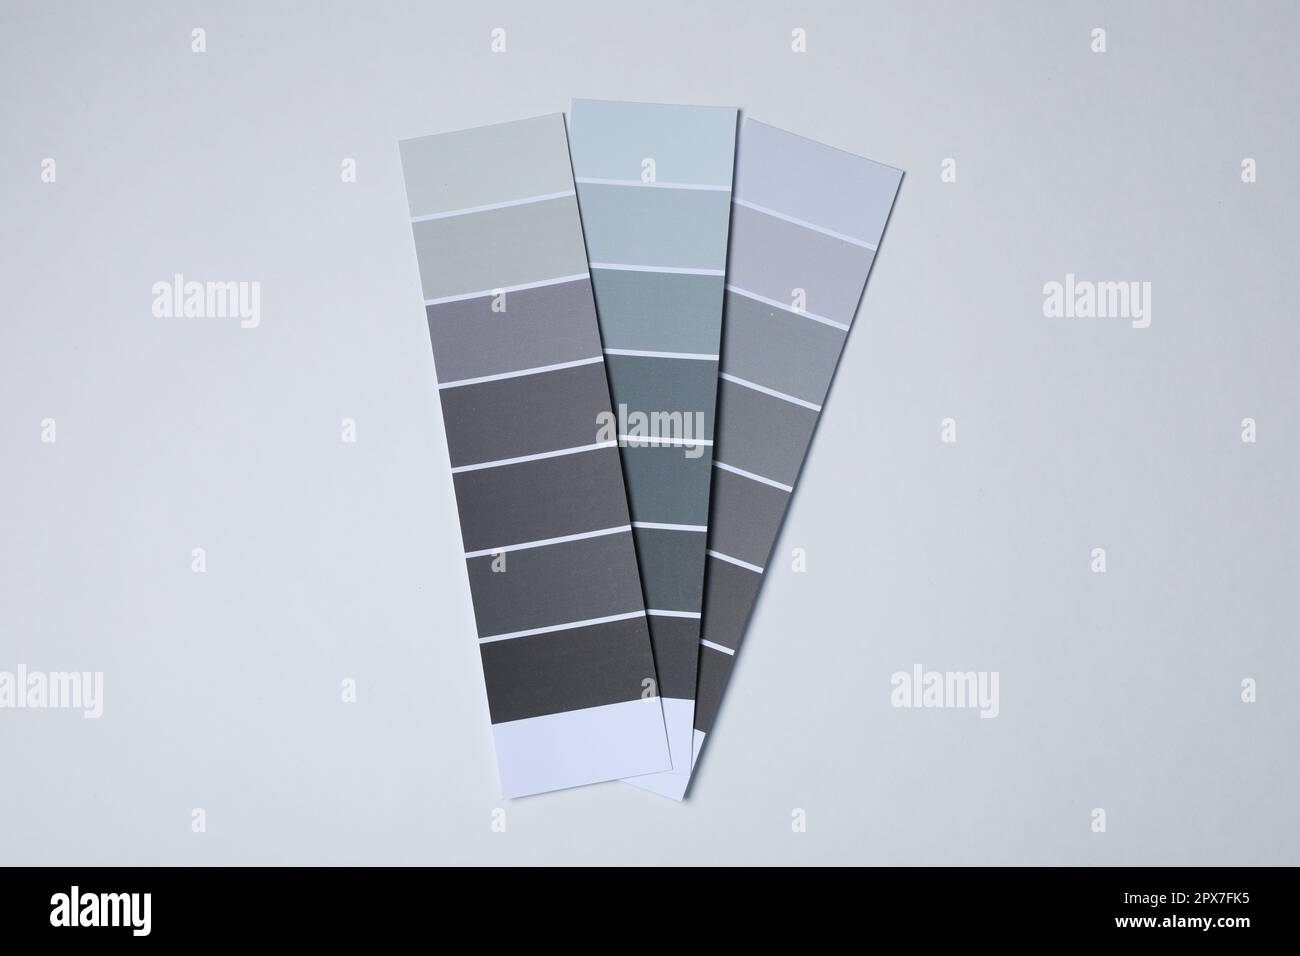 Farbsplitter mit grauen Farbschattierungen auf hellem Hintergrund, Draufsicht Stockfoto